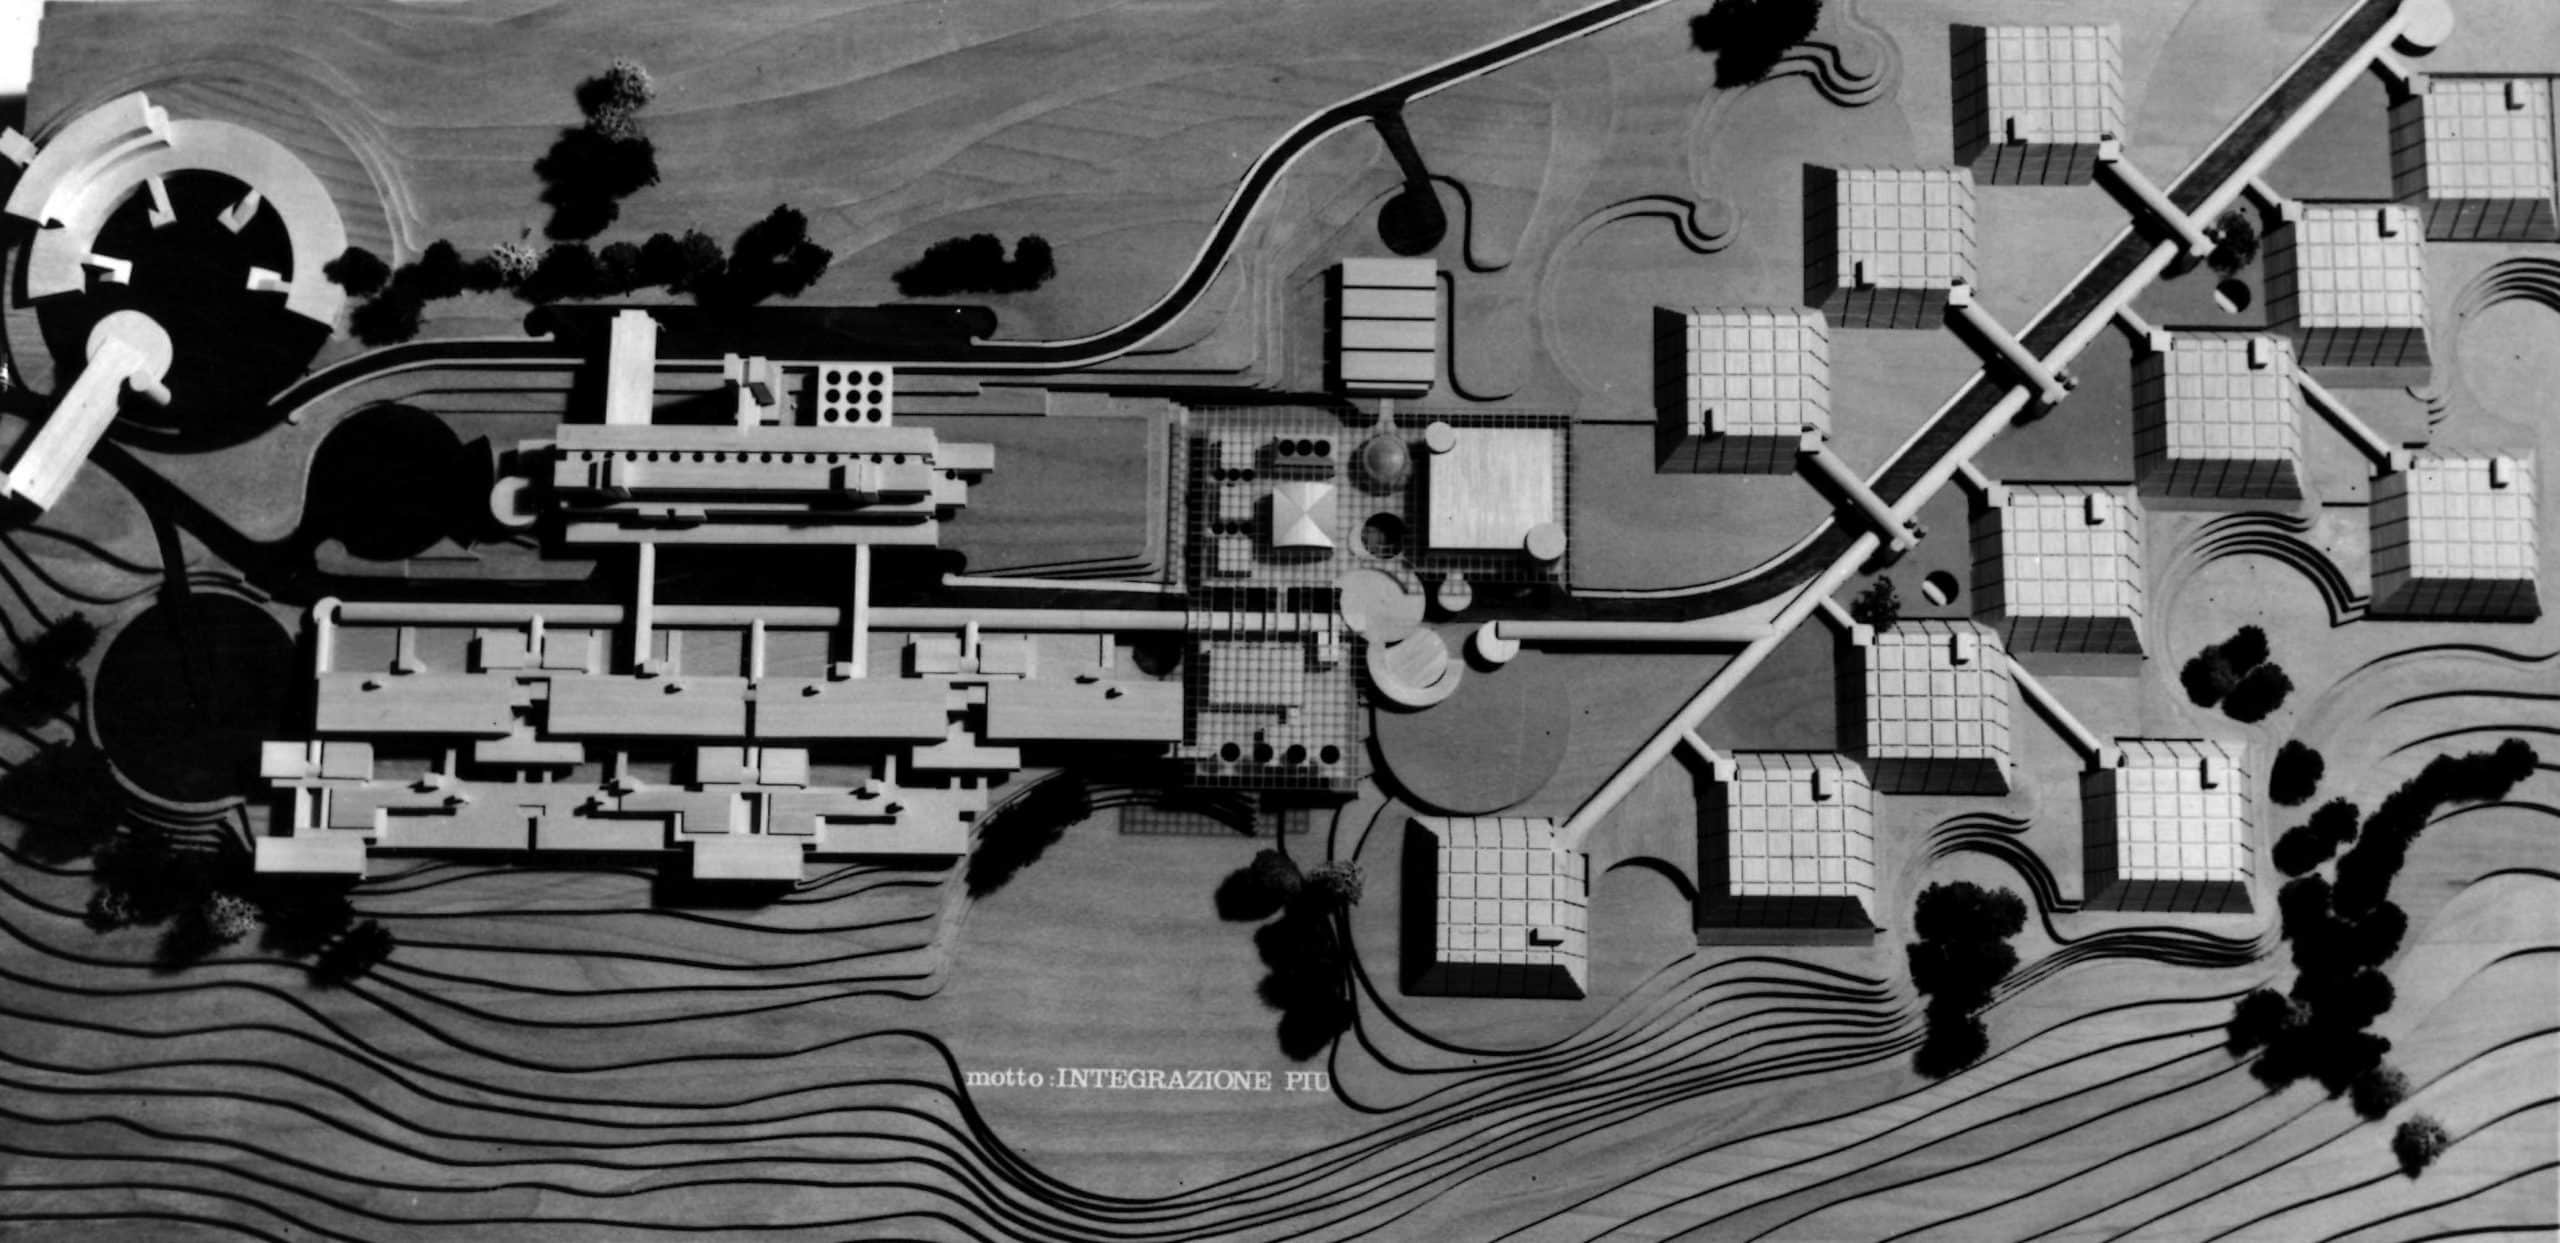 8 - Progetto del nuovo ospedale psichiatrico provinciale a Fermo (AP); con Studio Architetti. Concorso nazionale, senza seguito per sopraggiunta L. 180/1978 - Vista zenitale del plastico